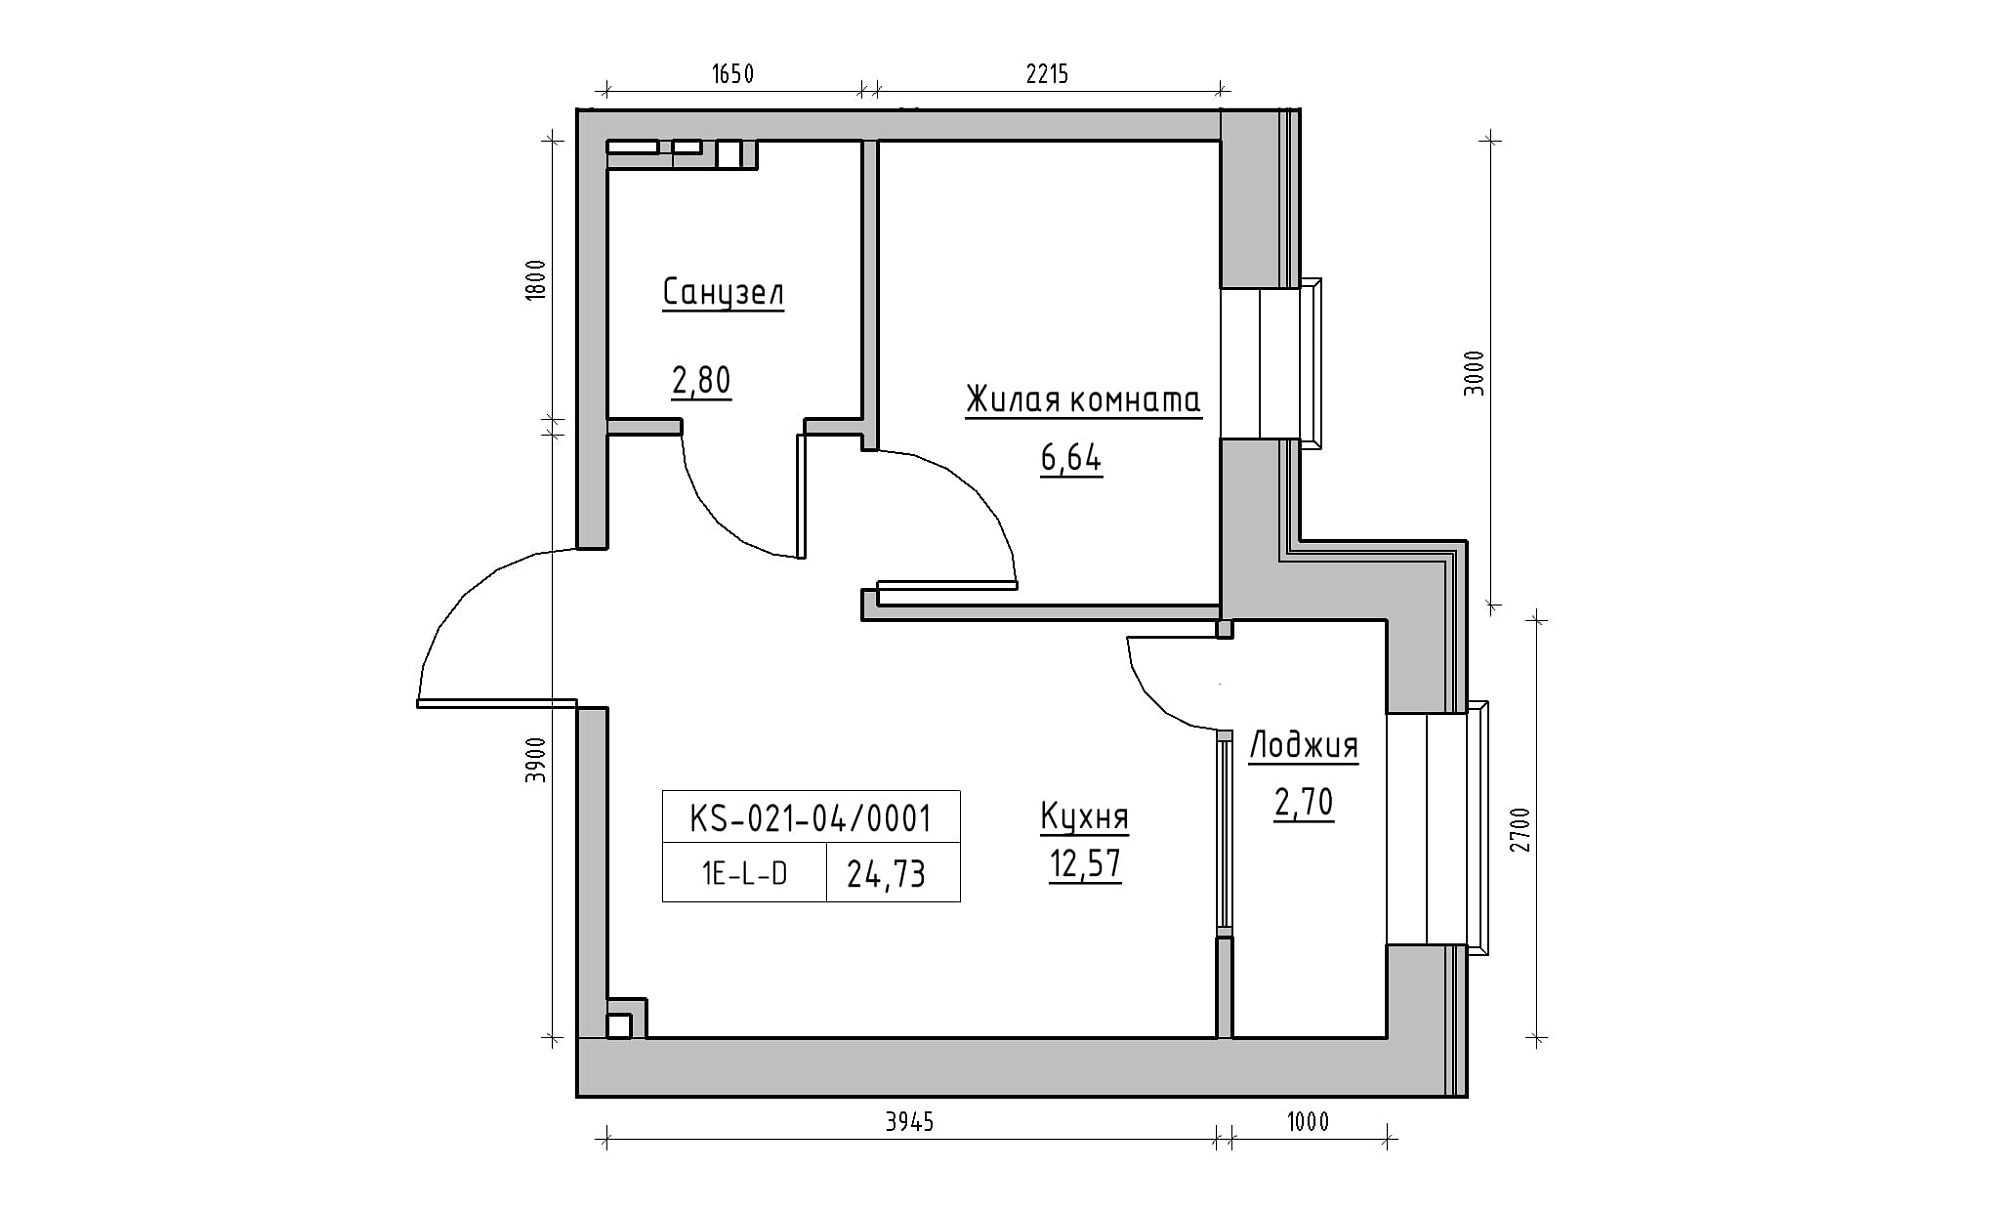 Планировка 1-к квартира площей 24.73м2, KS-021-04/0001.